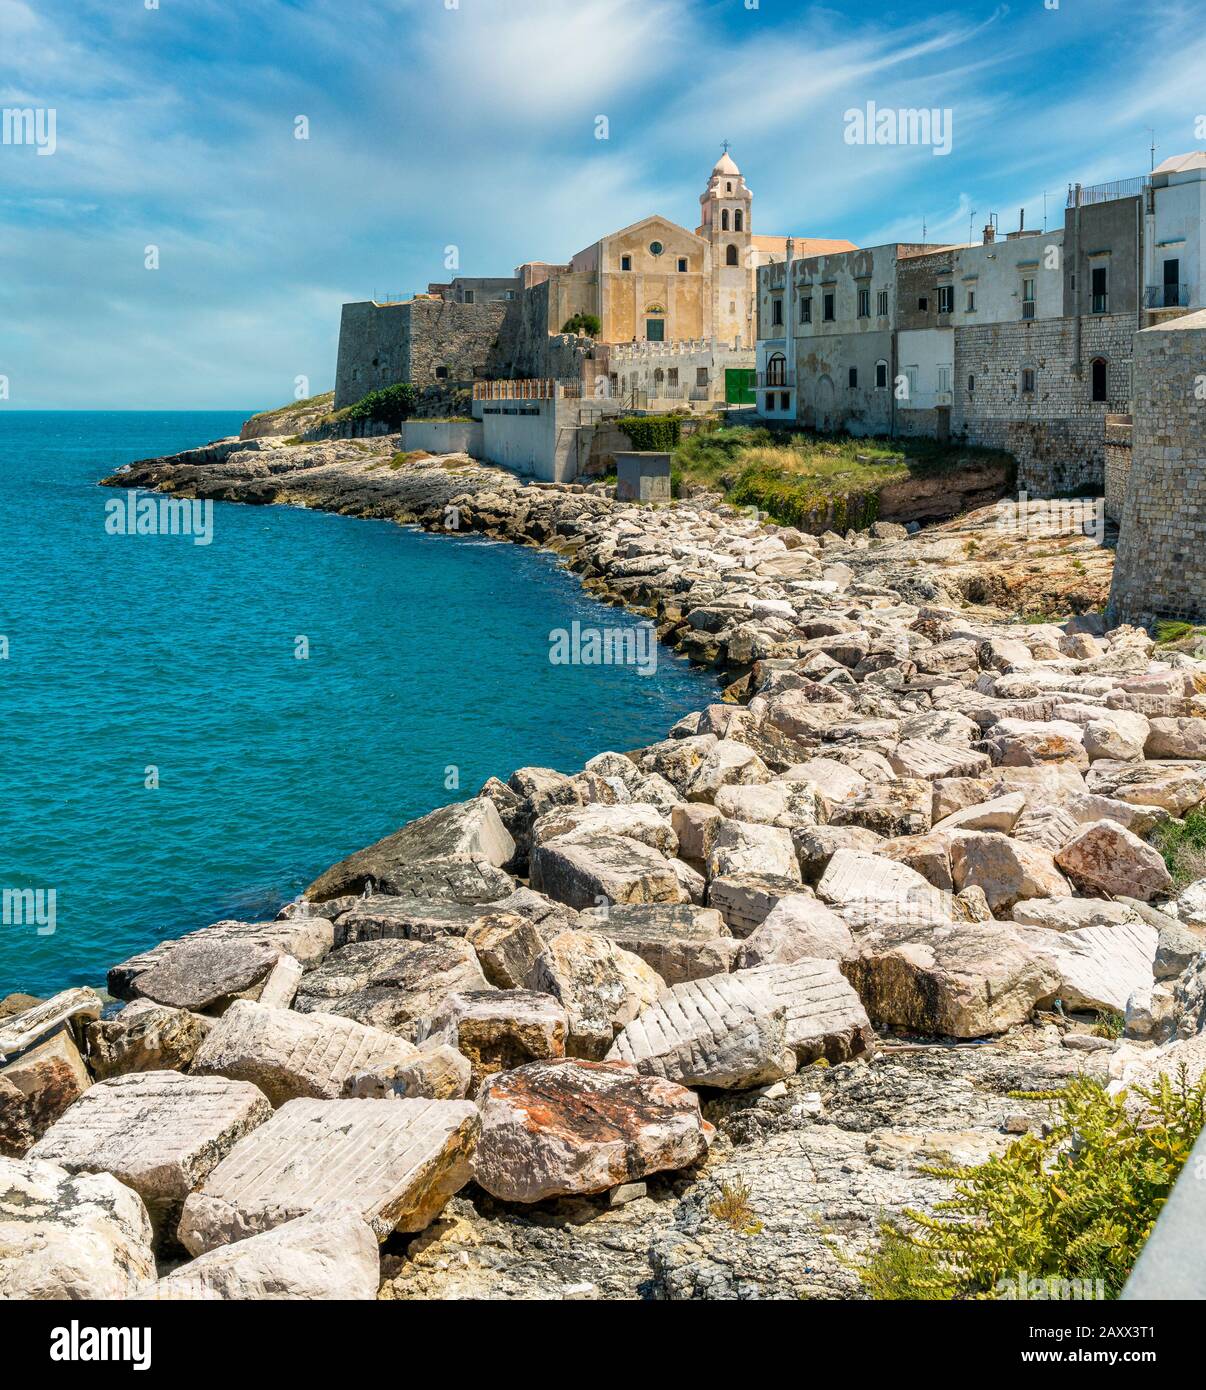 Le beau front de mer de Vieste, province de Foggia, Pouilles (Pouilles), Italie. Banque D'Images